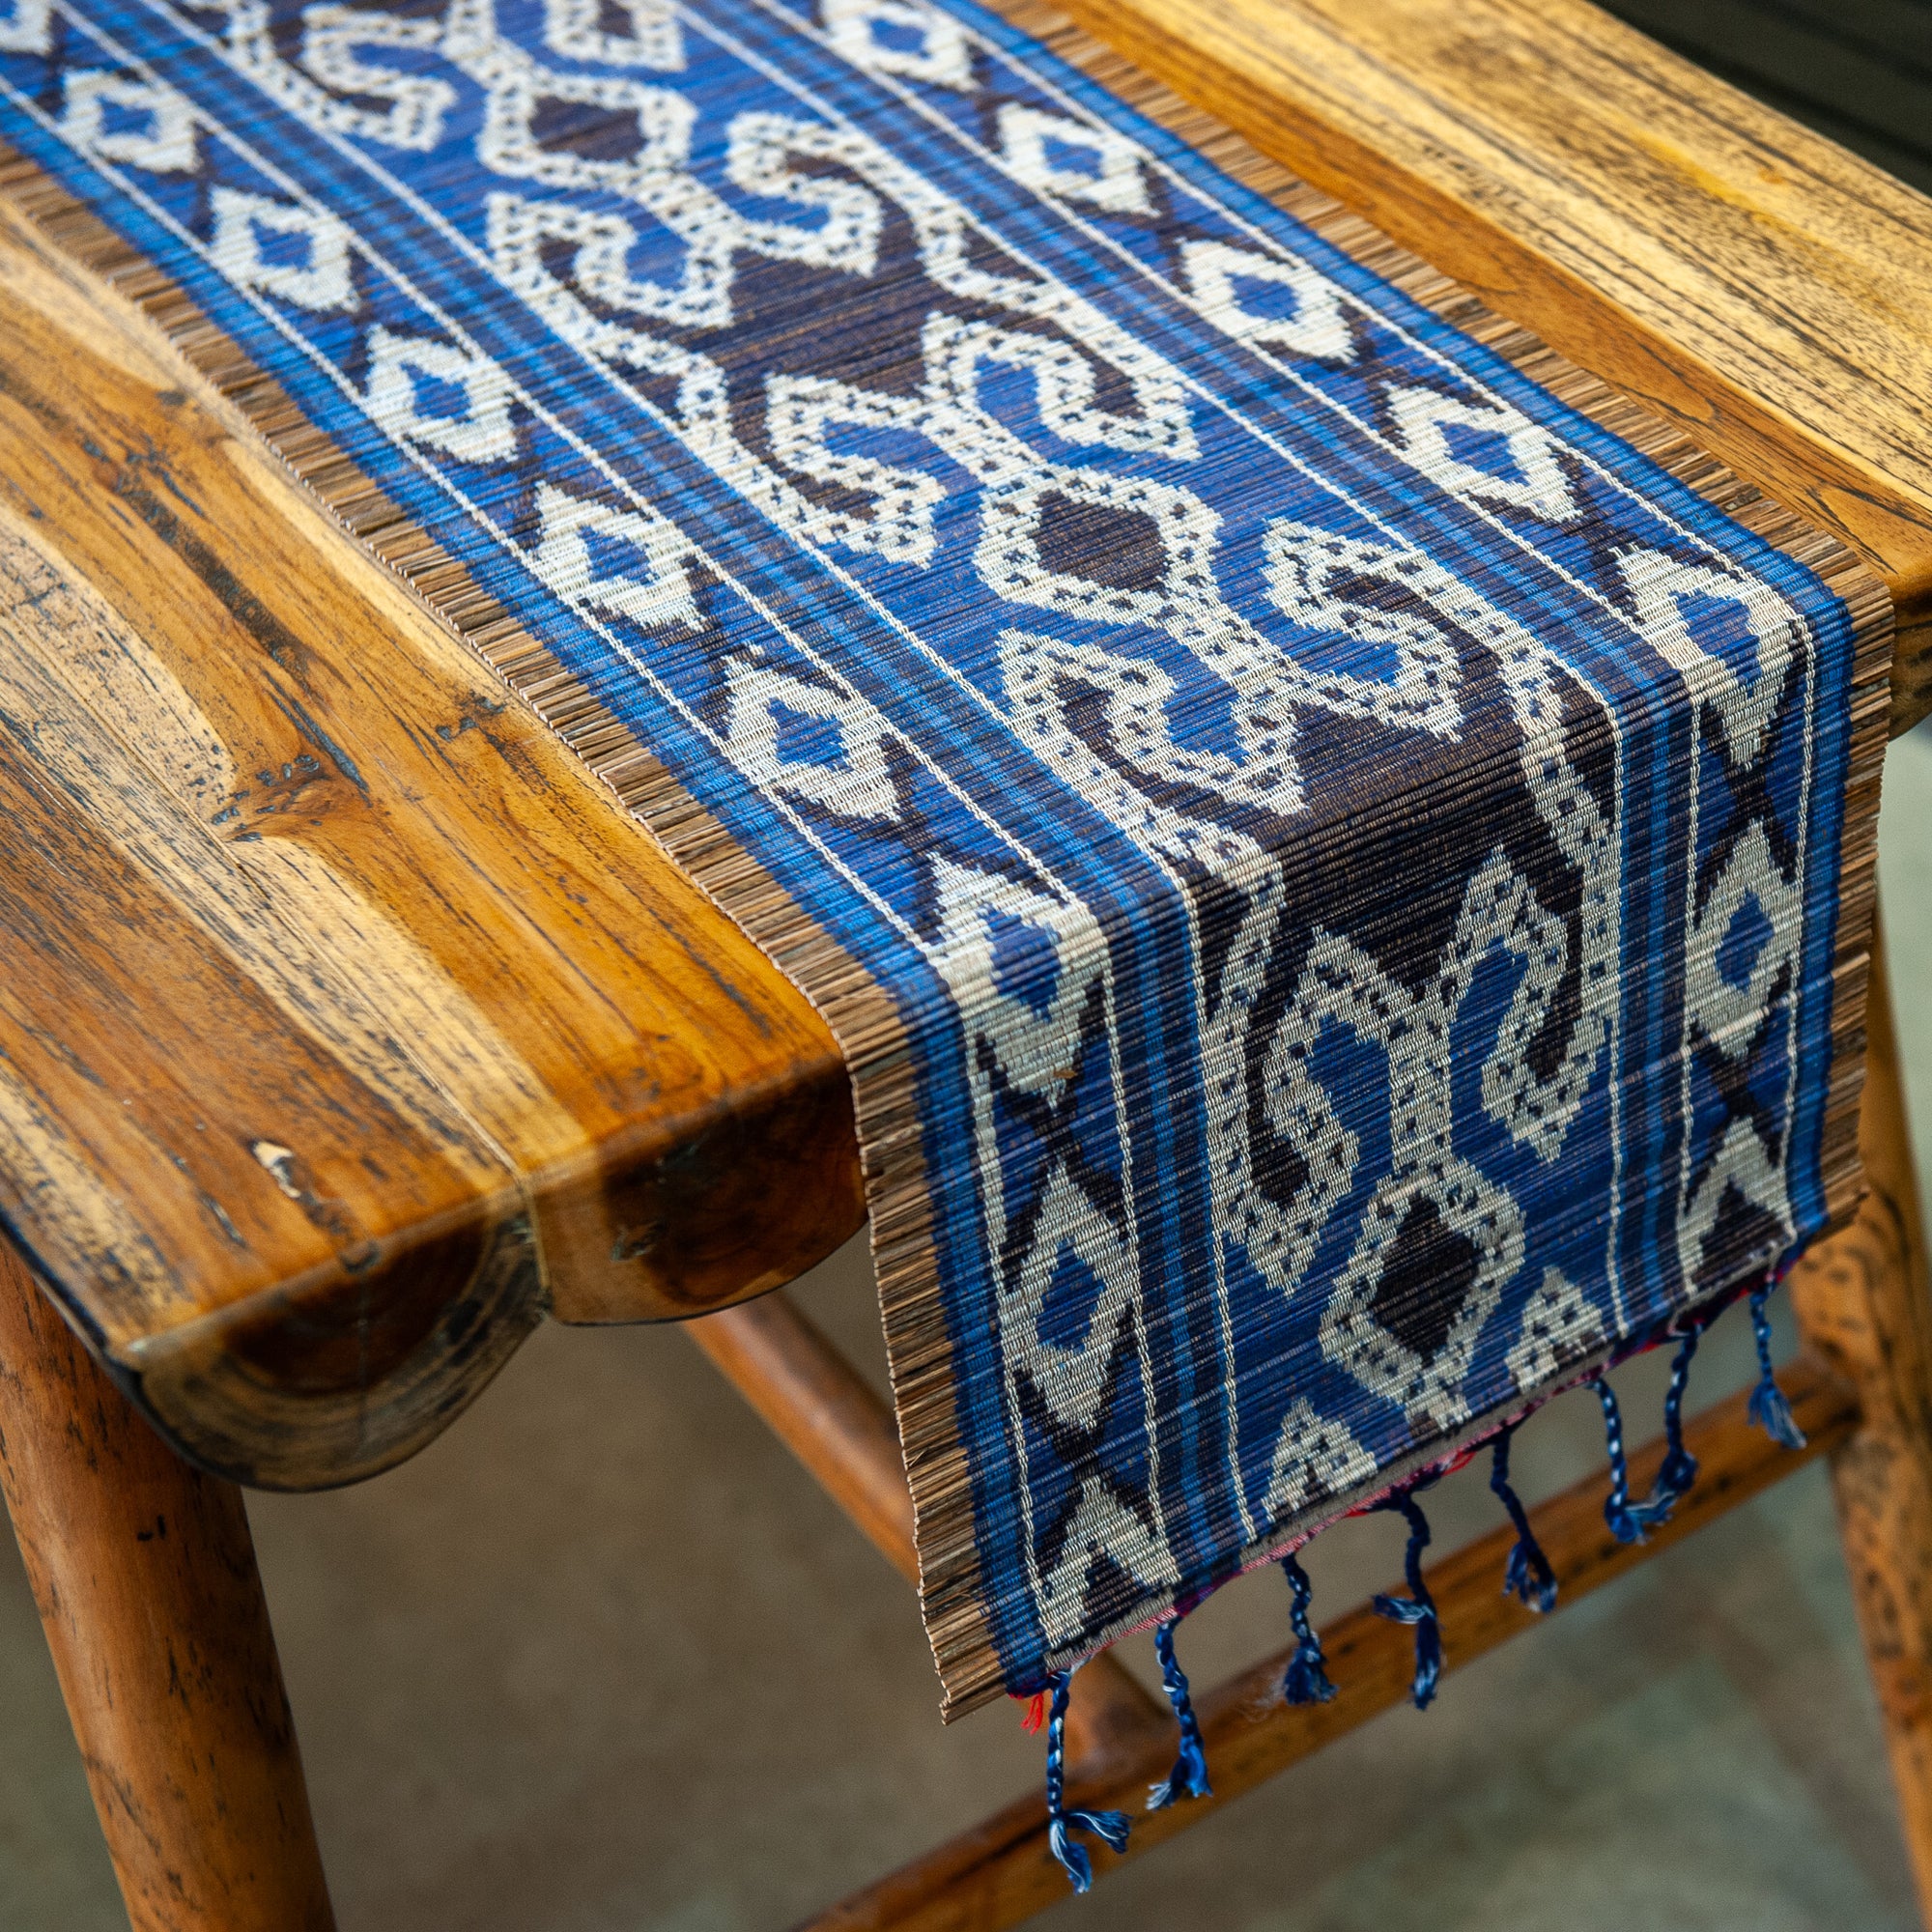 Ikat Weave on Bamboo Table Runner - Blue/Black